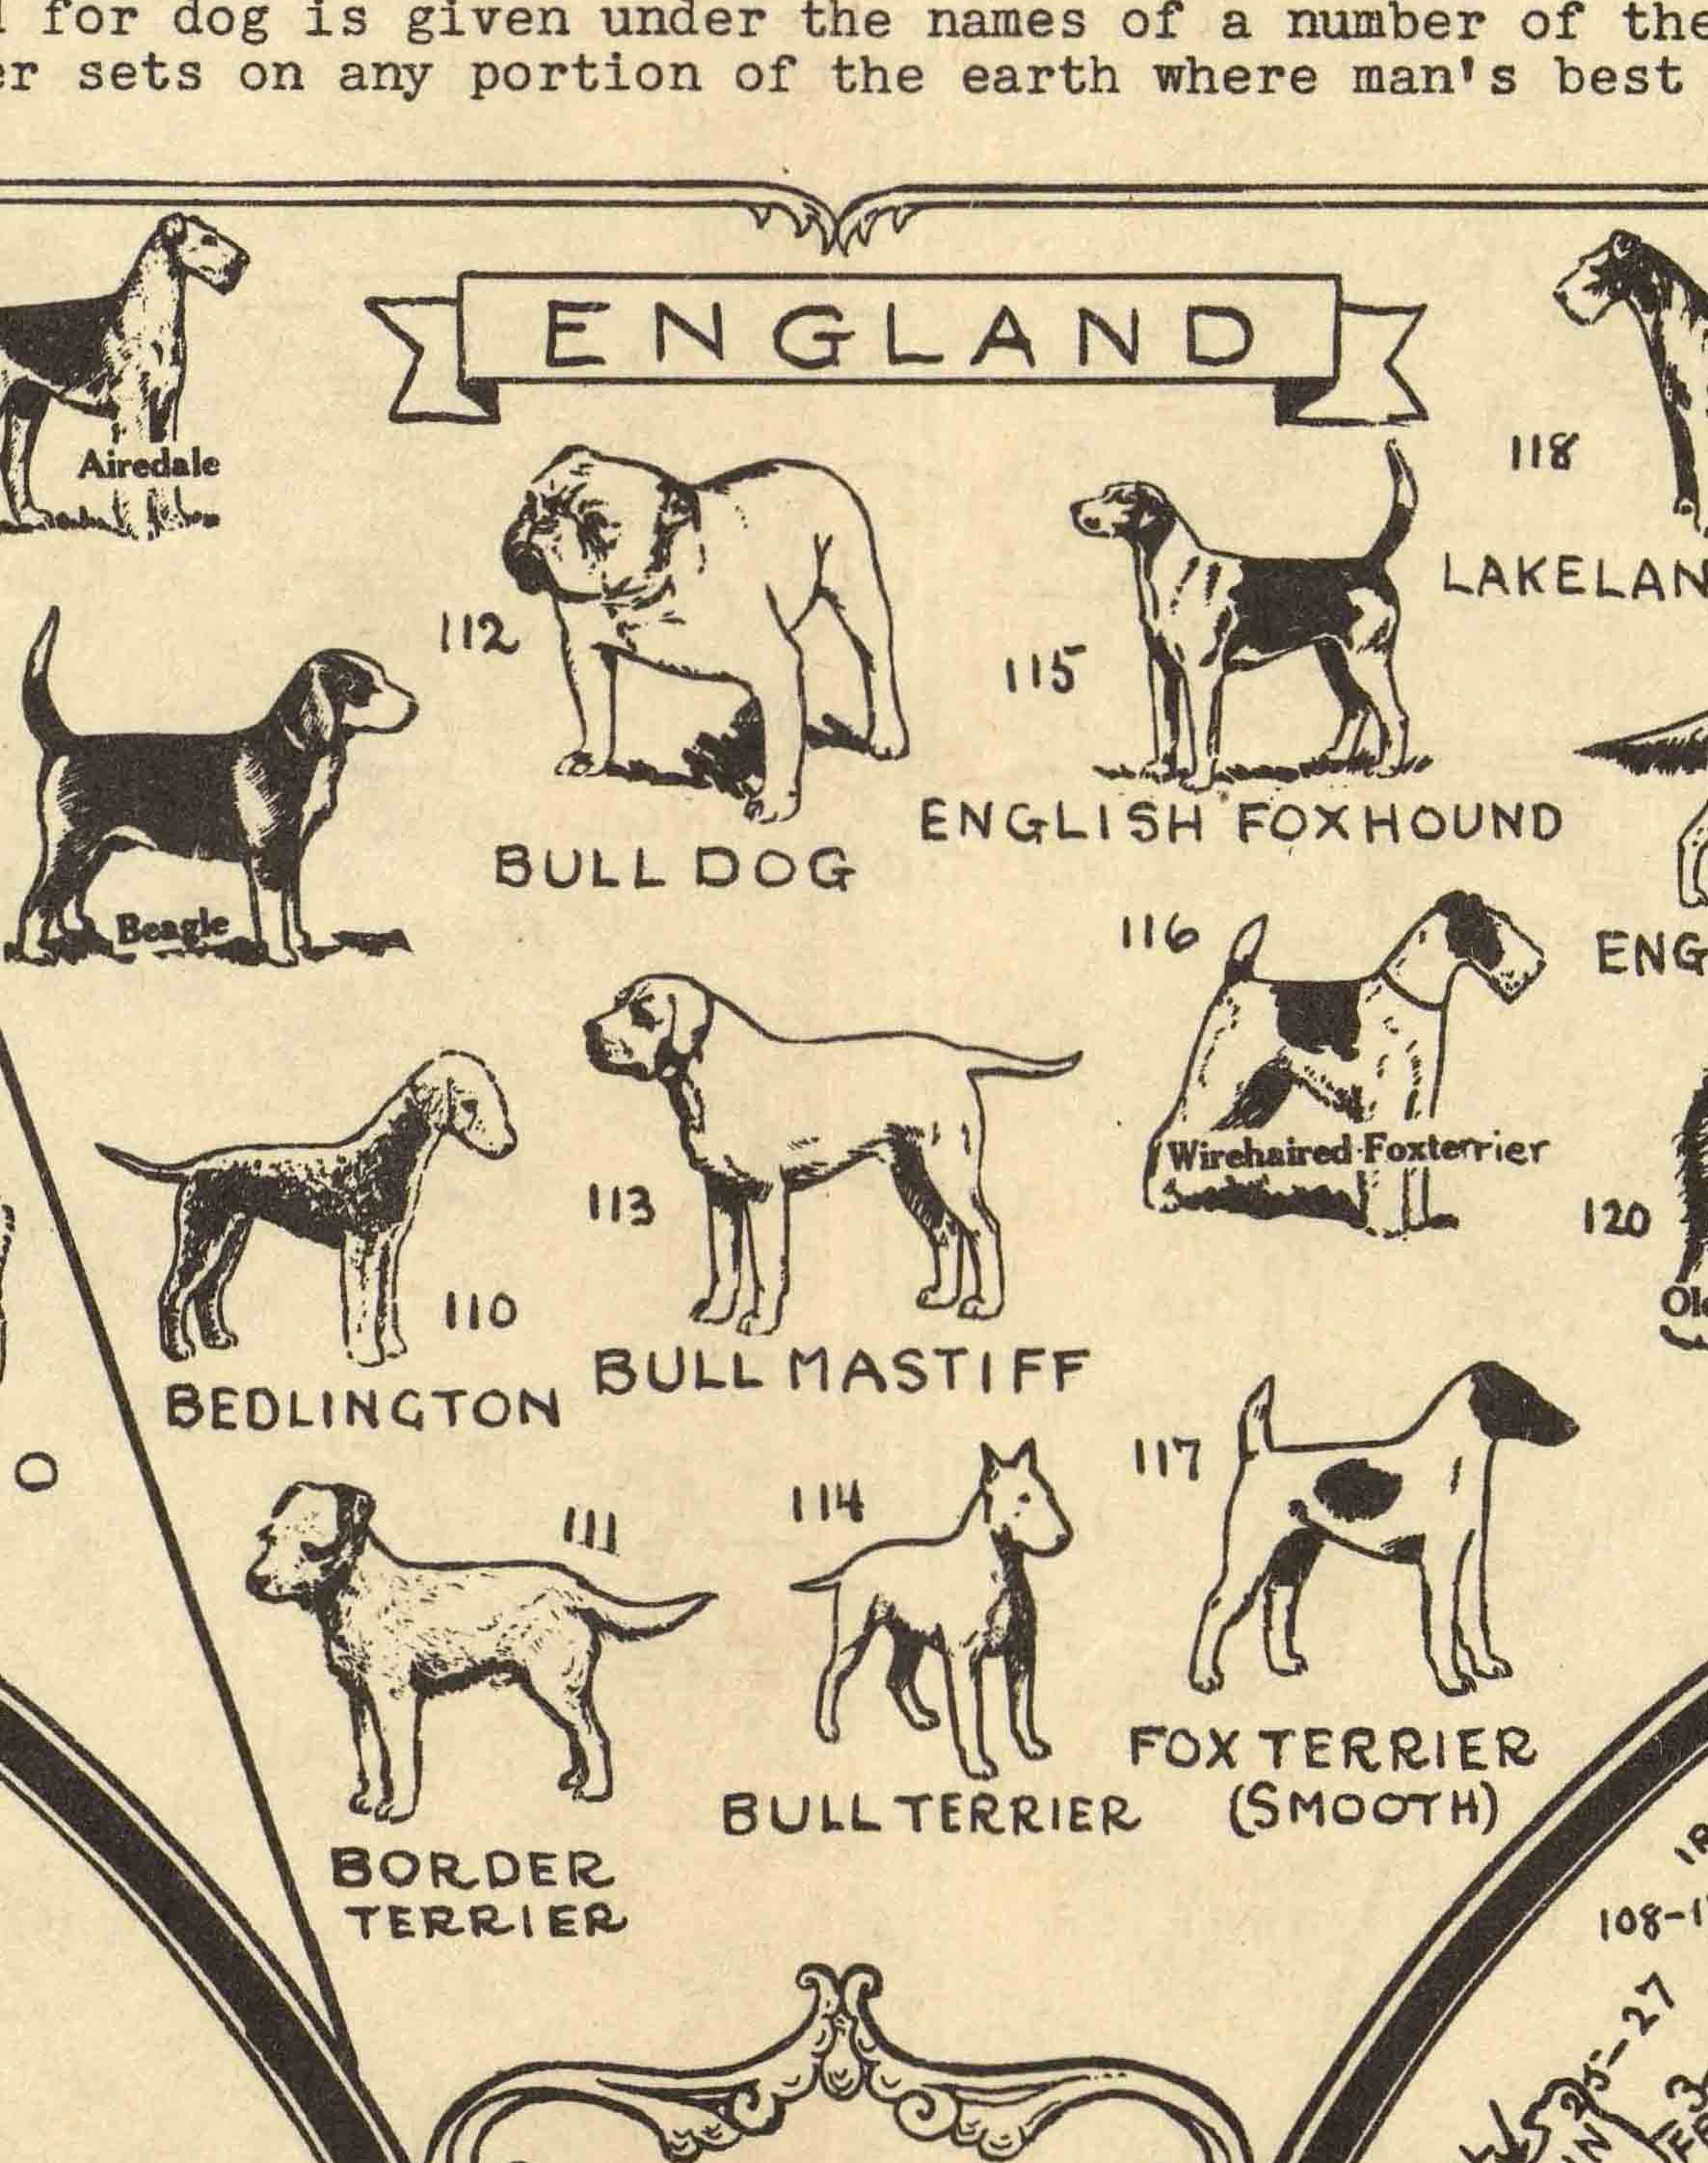 Mapa Antiguo de Perros del Mundo - Enmarcado A PEDIDO